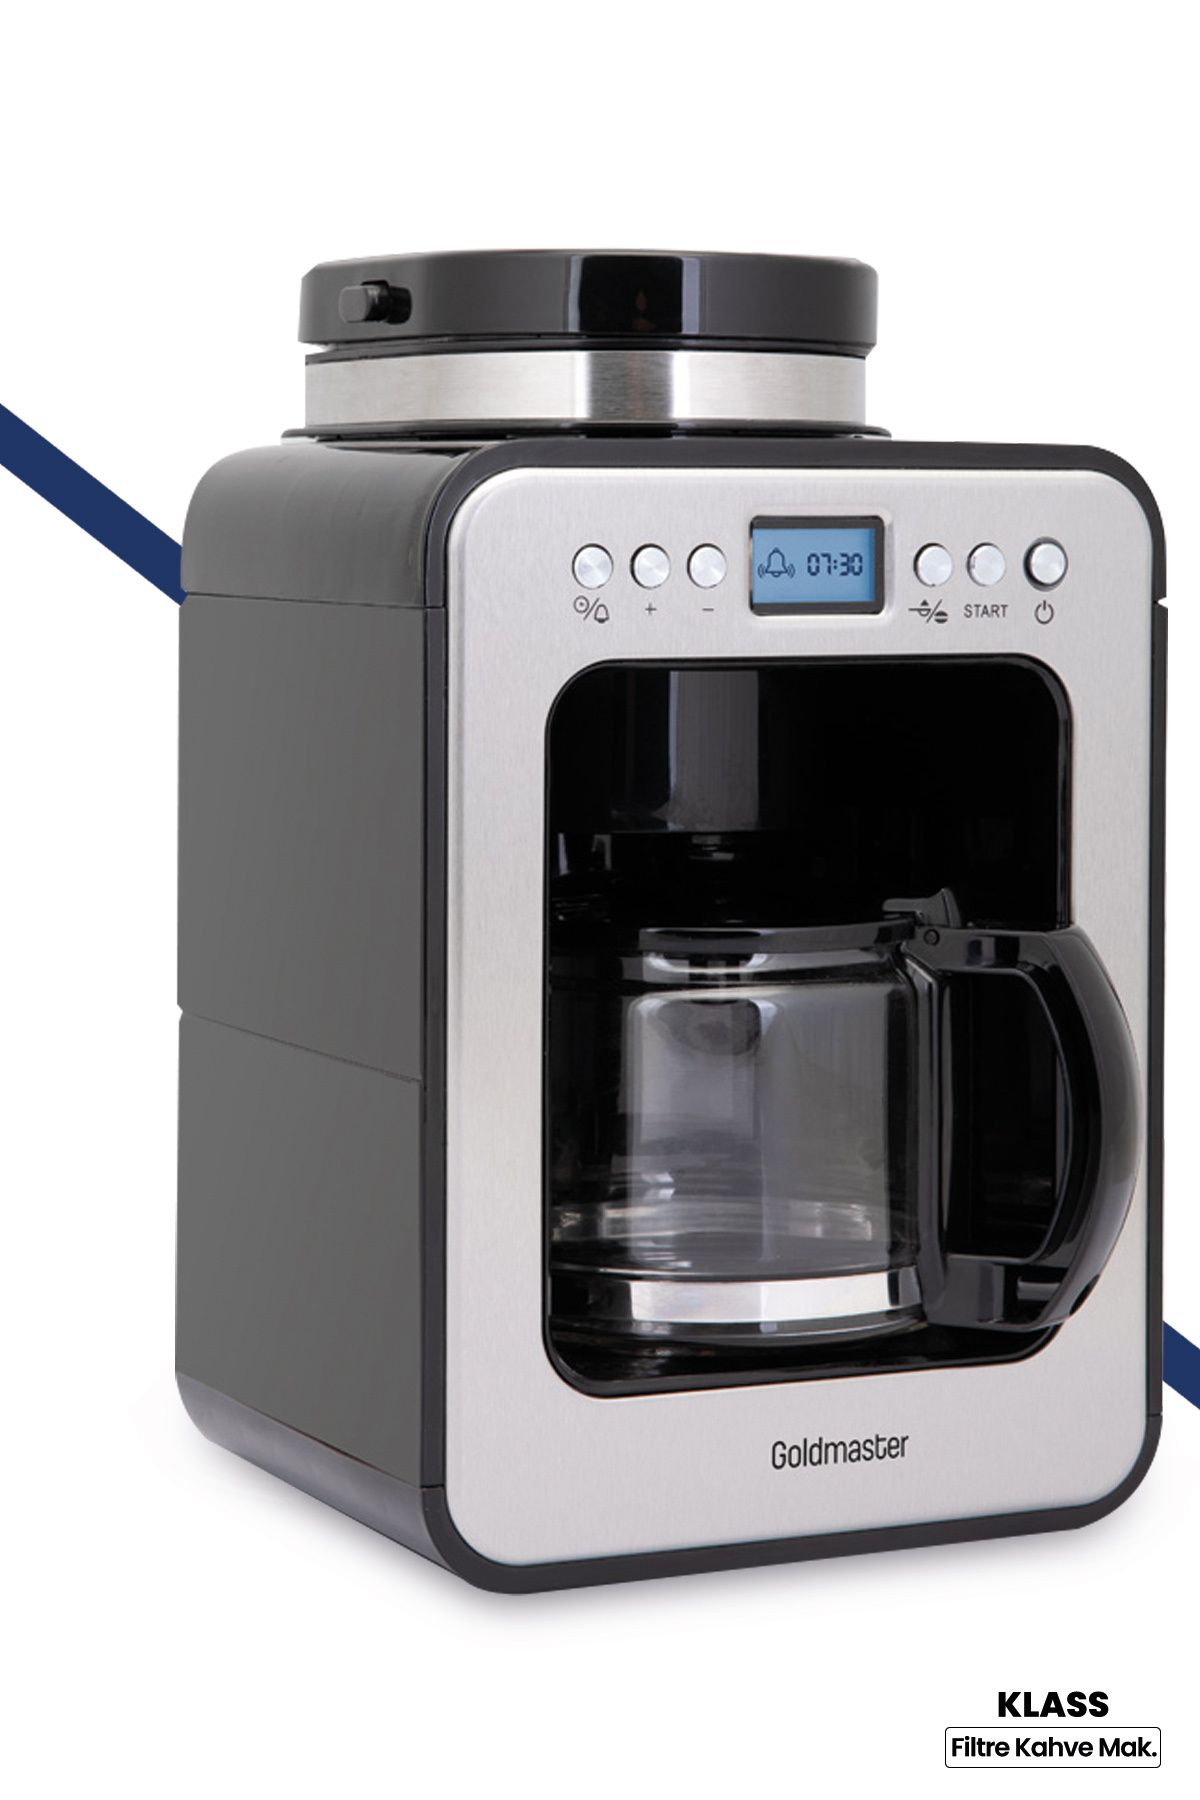 GoldMaster Orginal Klass 2 In 1 Öğütücülü Programlanabilir Tam Otomatik Filtre Kahve Makinesi